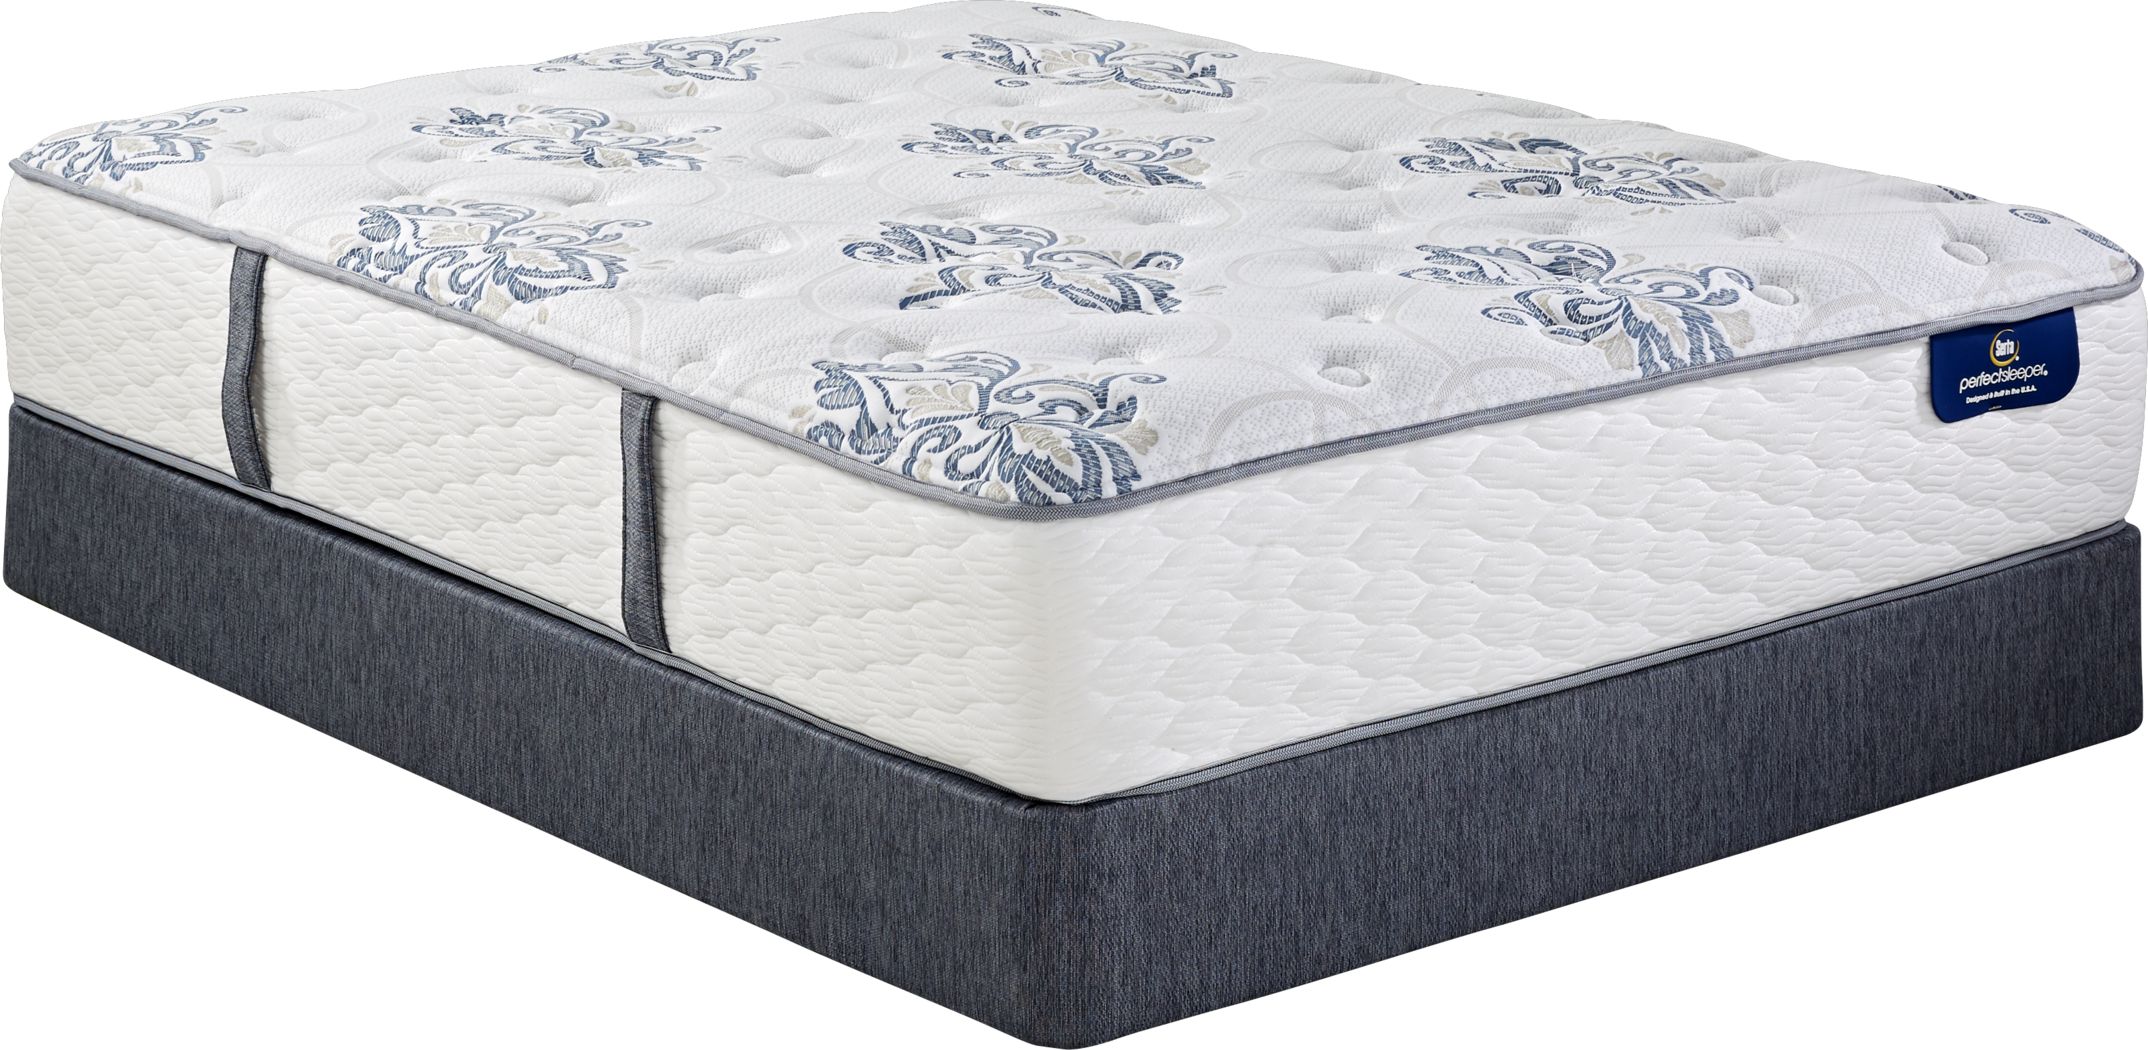 sarta perfect sleeper king mattress